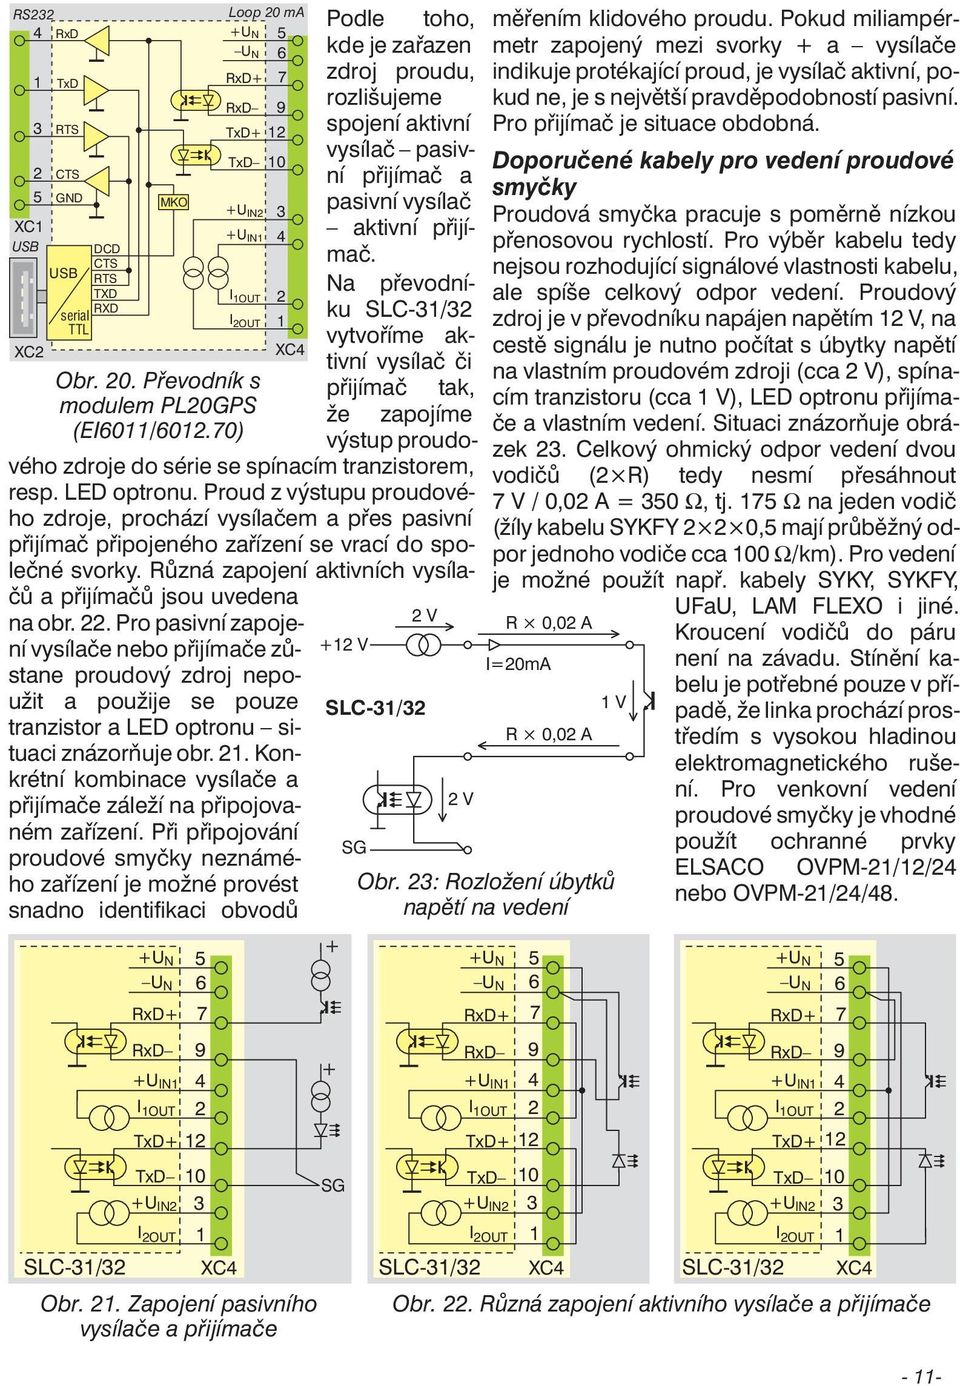 0) výstup proudového zdroje do série se spínacím tranzistorem, resp. LD optronu.